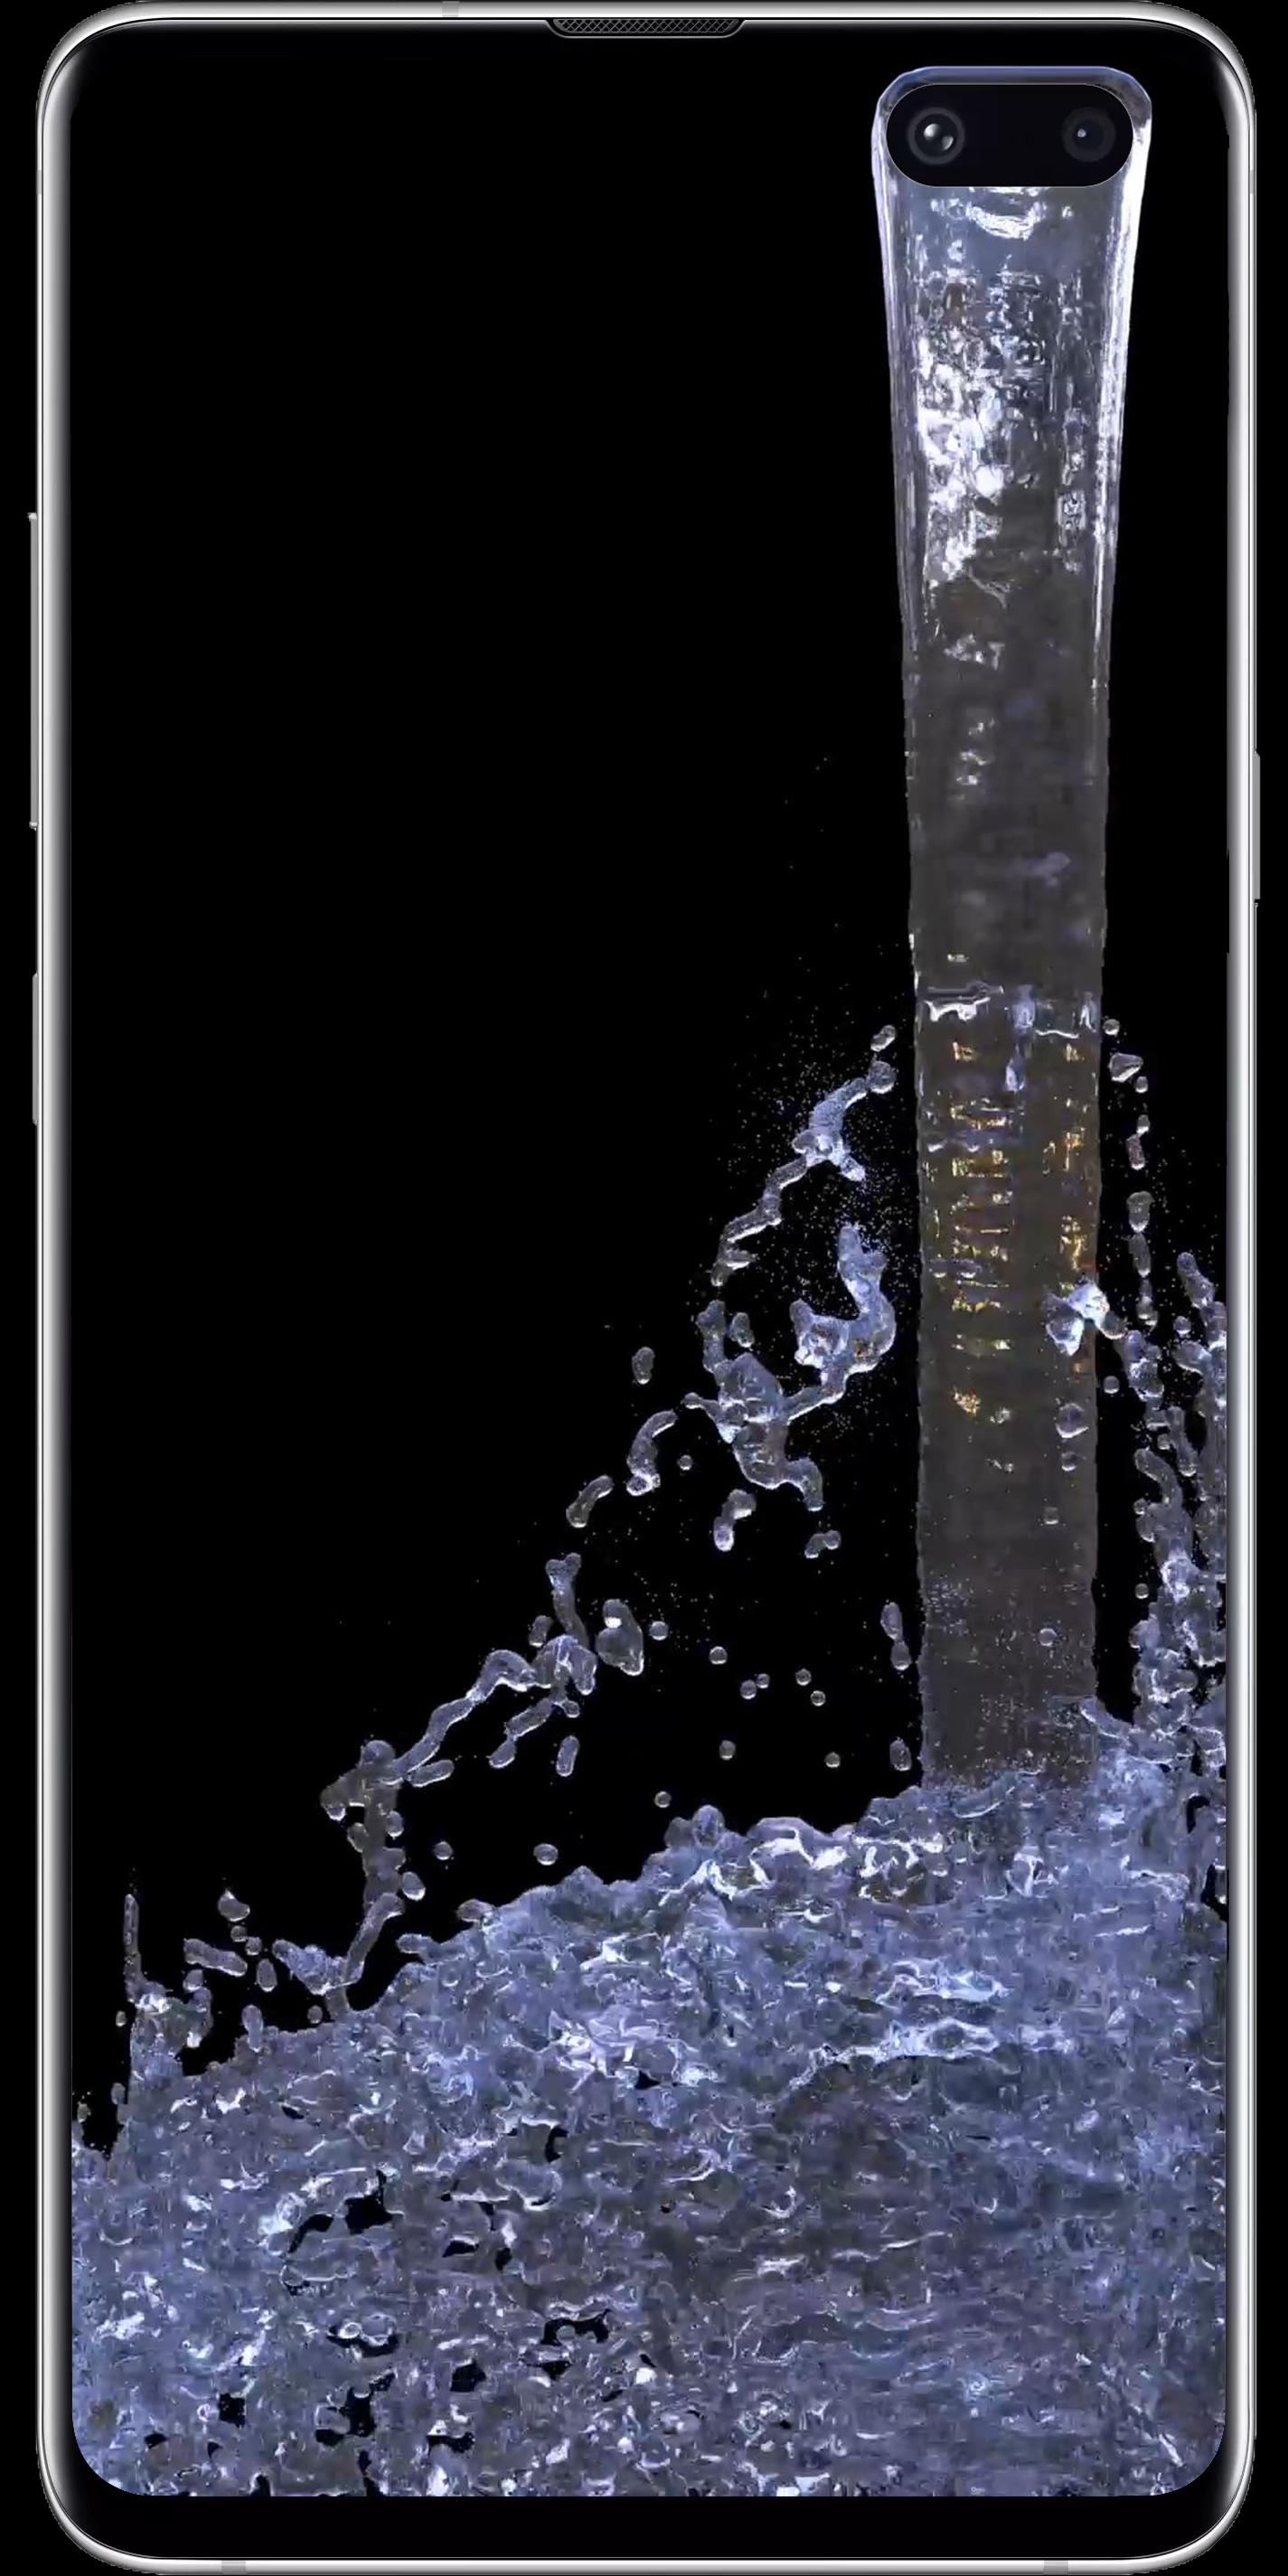 Android용 놀라운 물 라이브 배경 화면-S10 S10 + Apk 다운로드